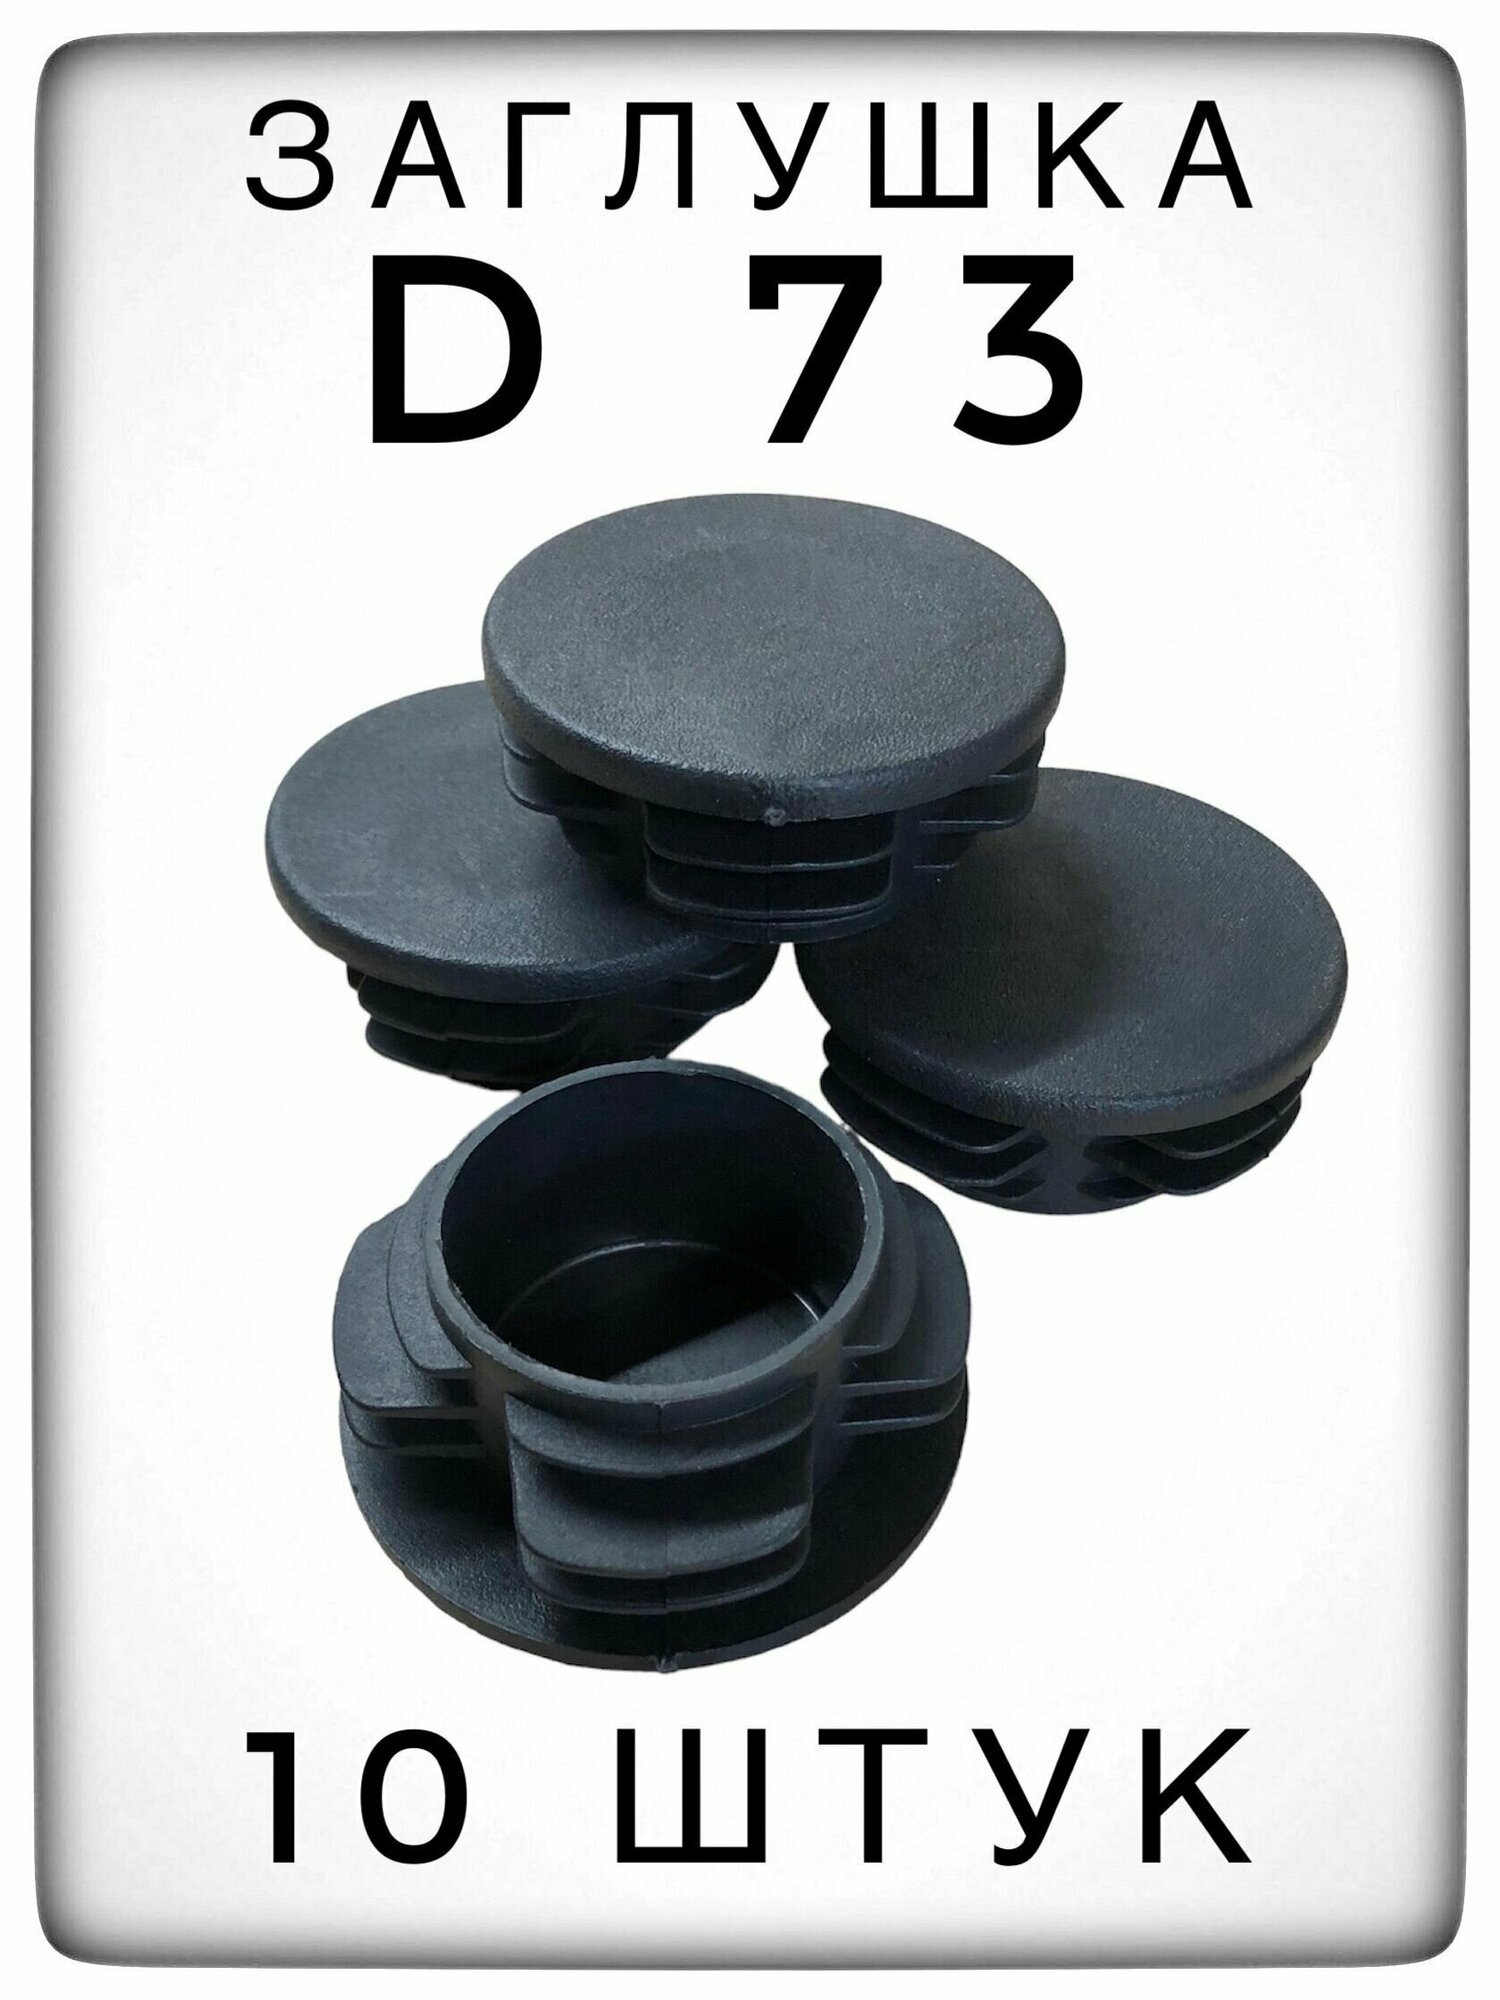 Заглушка Д73 (10 штук) пластиковая для металлической трубы НКТ